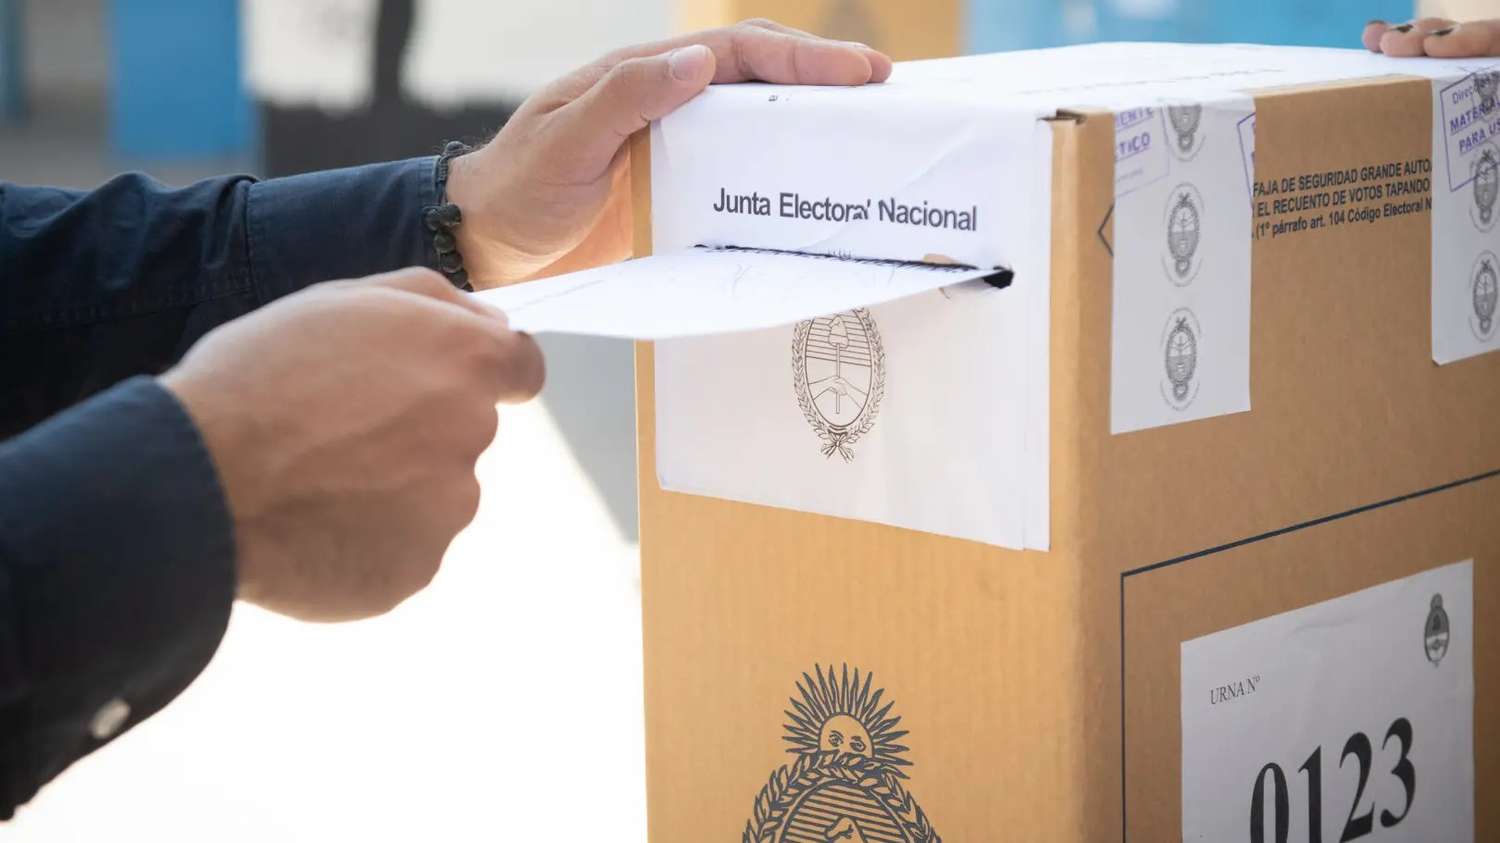 La Cámara Nacional Electoral pidió a la ciudadanía que concurra a votar el domingo